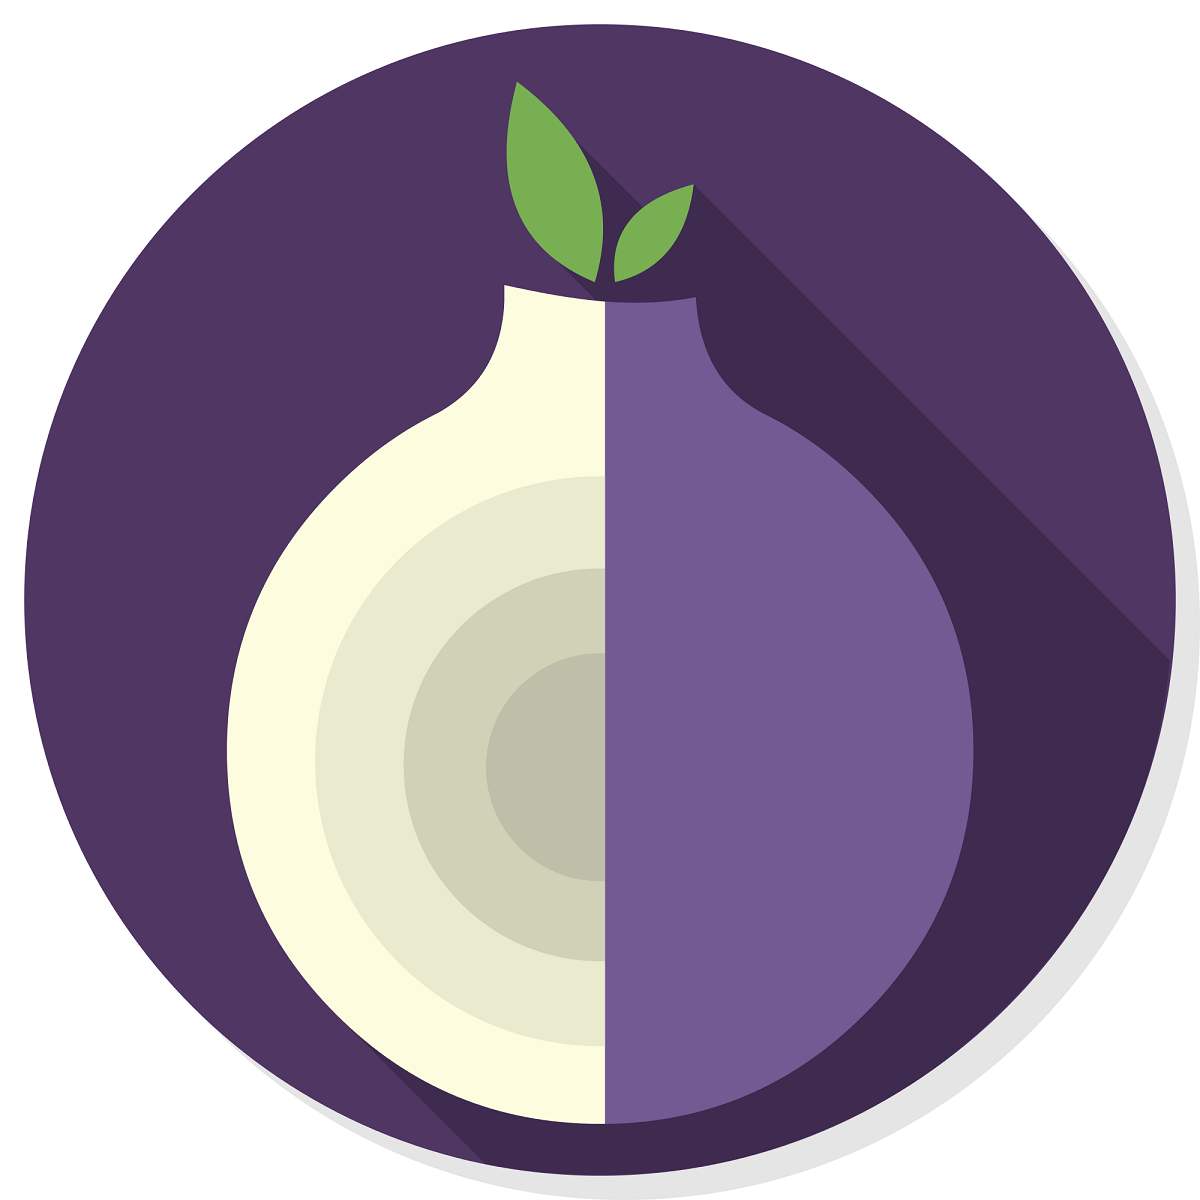 Tor browser imac гидра как рассадить коноплю